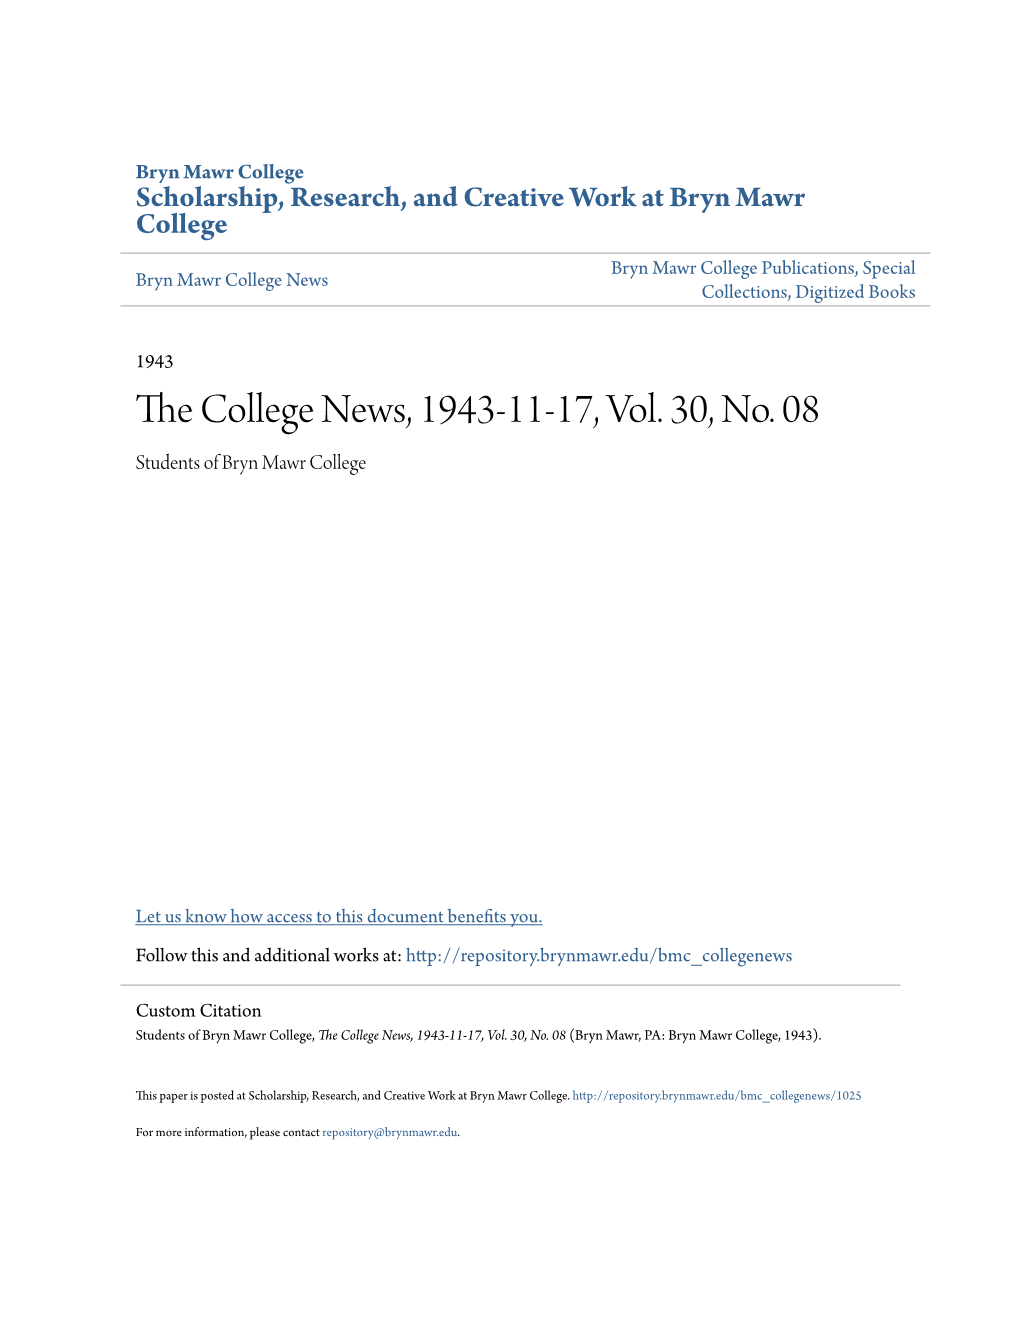 The College News, 1943-11-17, Vol. 30, No. 08 (Bryn Mawr, PA: Bryn Mawr College, 1943)